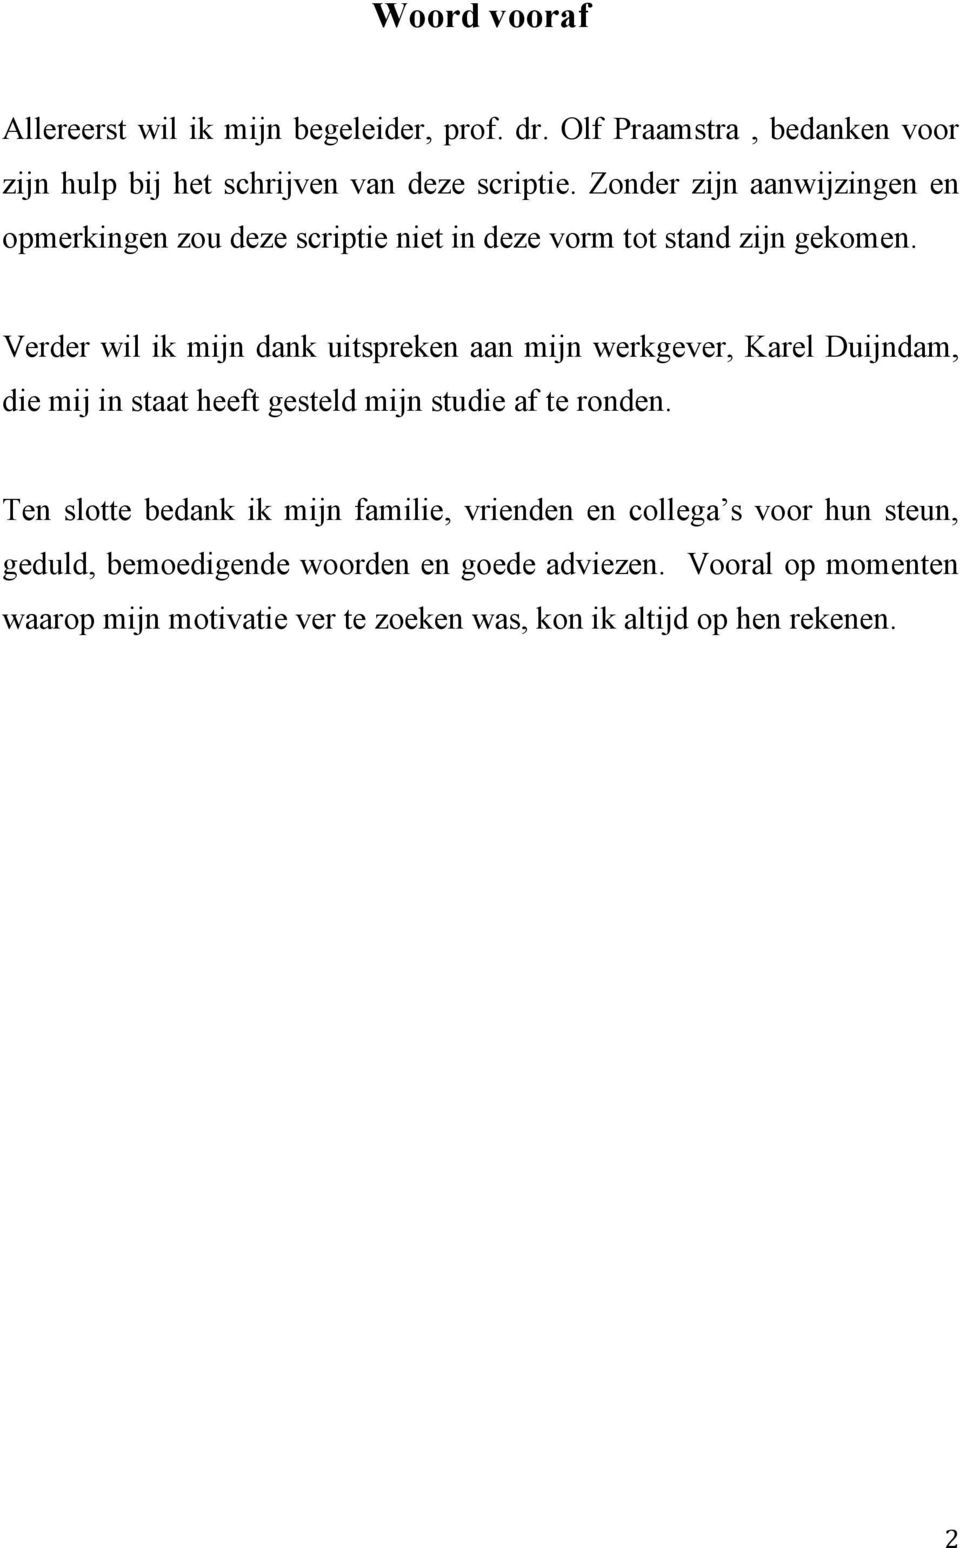 Verder wil ik mijn dank uitspreken aan mijn werkgever, Karel Duijndam, die mij in staat heeft gesteld mijn studie af te ronden.